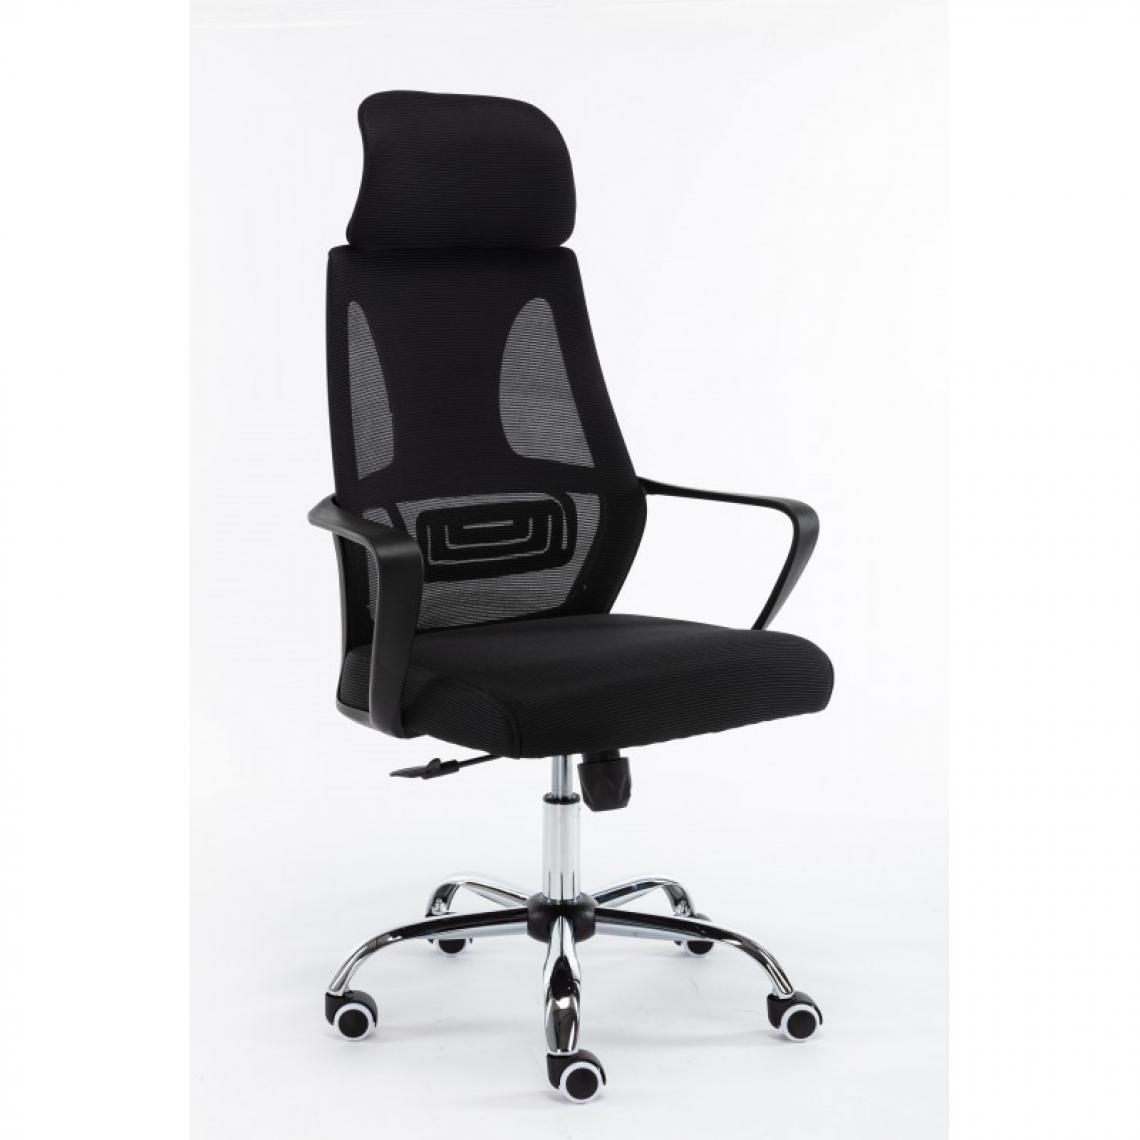 Hucoco - ELIASS - Fauteuil de bureau ergonomique - Hauteur ajustable - Avec accoudoirs - Chaise de bureau télétravail - Noir - Chaises